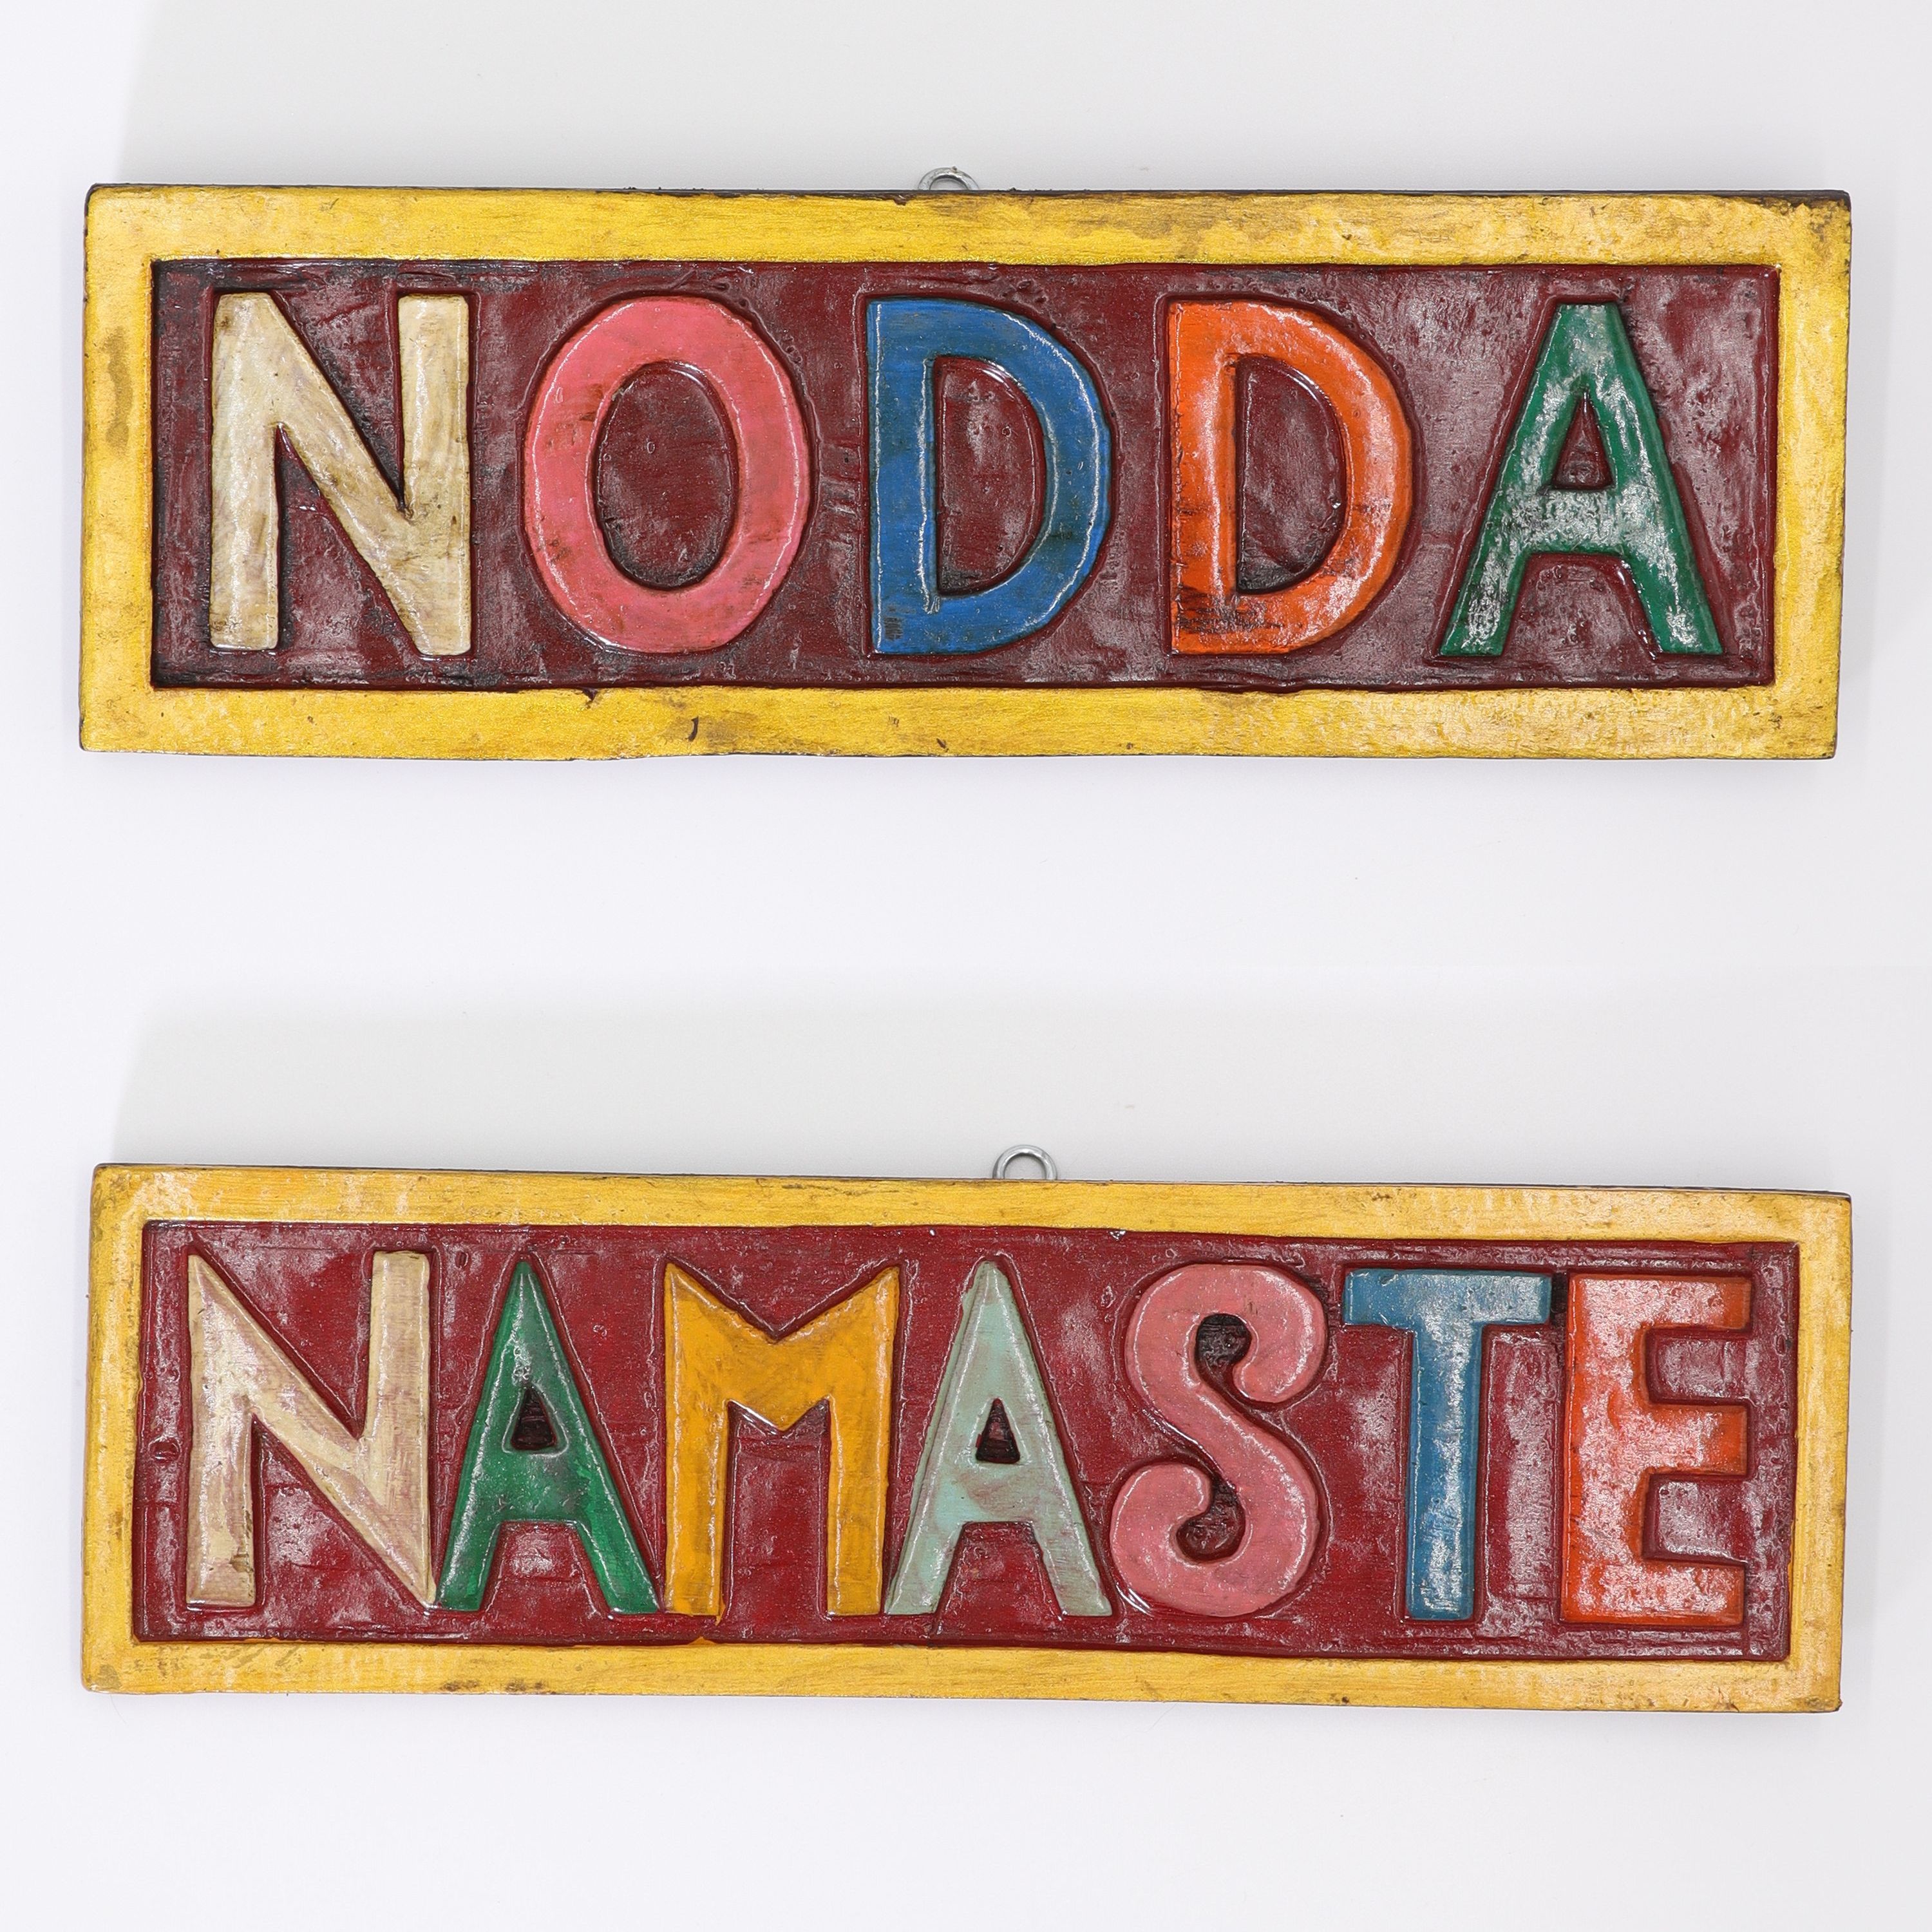 Schild aus Holz - Nodda & Namaste als zweiseitiges Wende-Schild - buntes Wandbild von Hand geschnitzt - ca. 8 x 24 cm - wundervolle Wanddekoration in traditionell nepalesischen Farben - echte Handarbeit und fair gehandelt aus Nepal